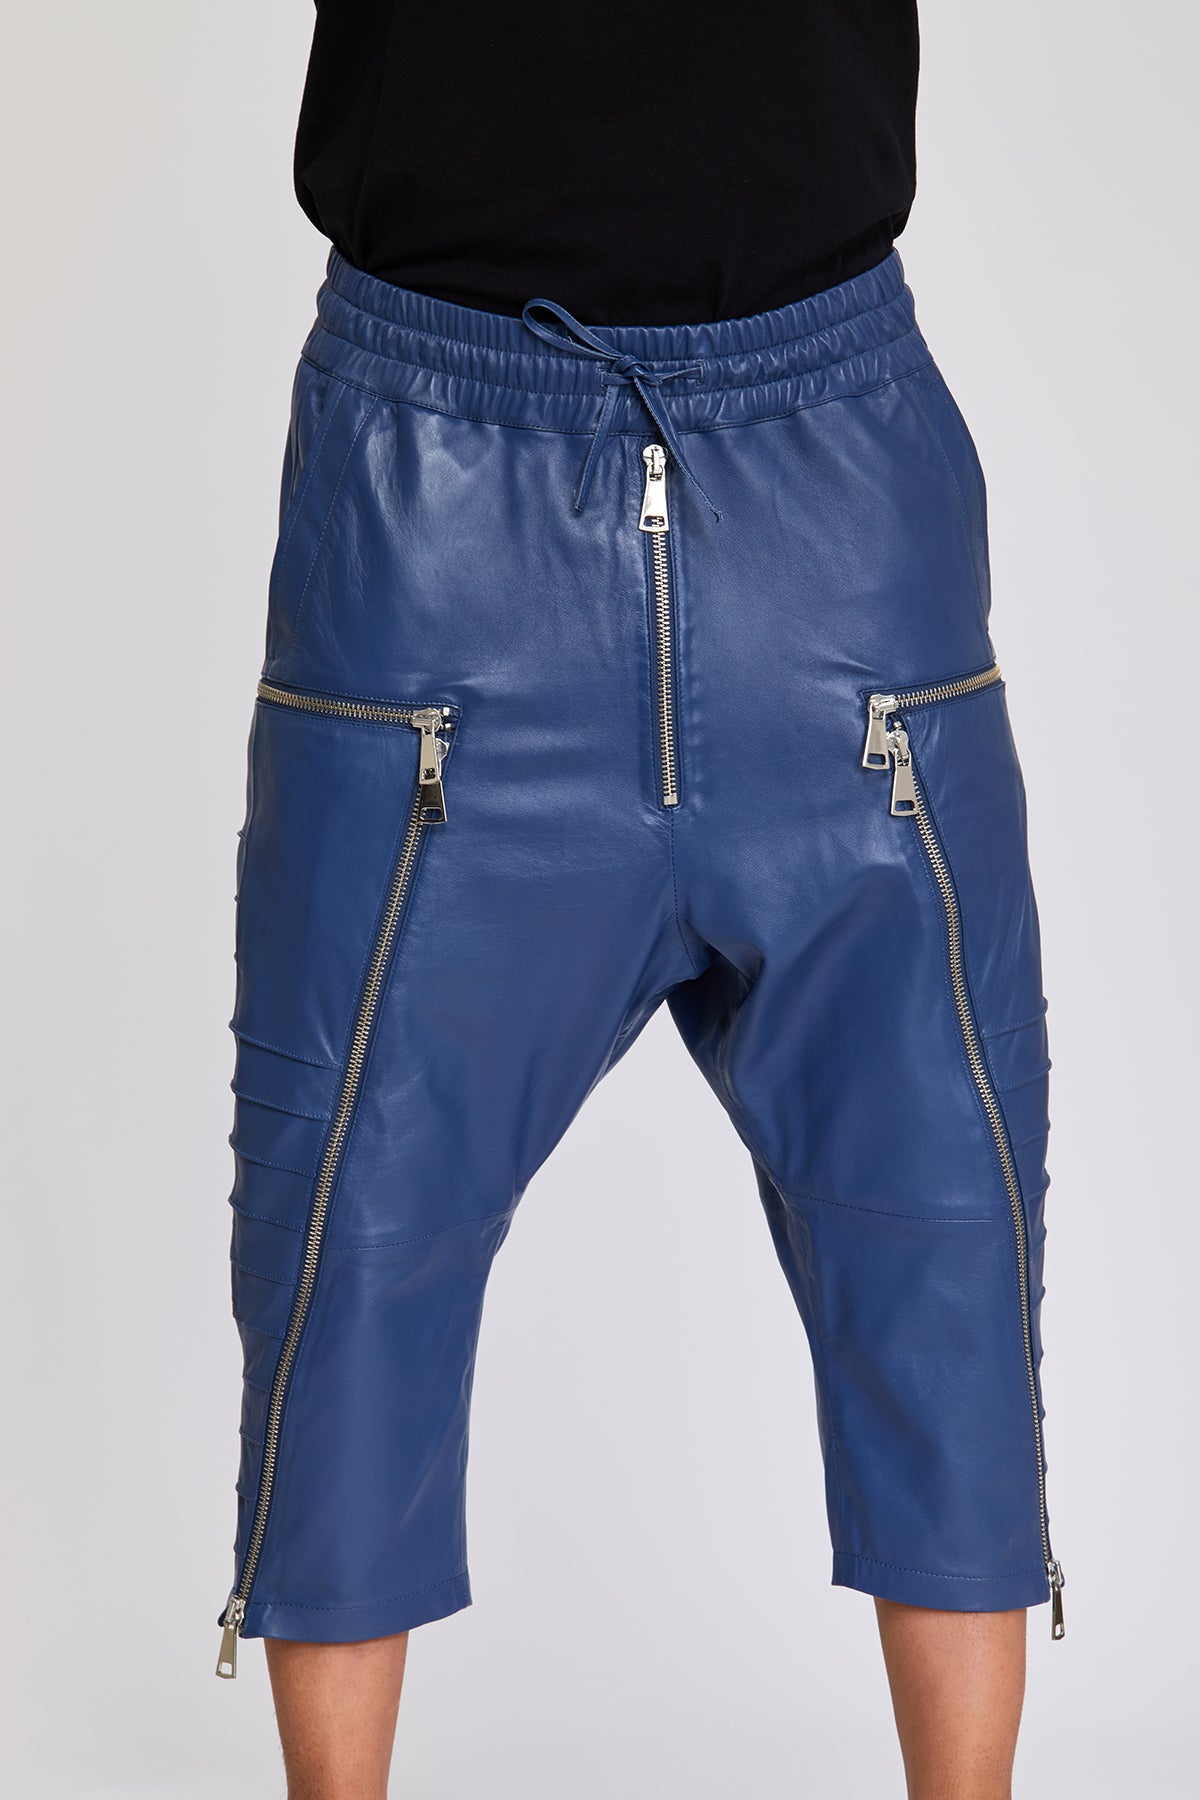 Vaude Farley Capri Pants II - Shorts Men's | Free EU Delivery |  Bergfreunde.eu